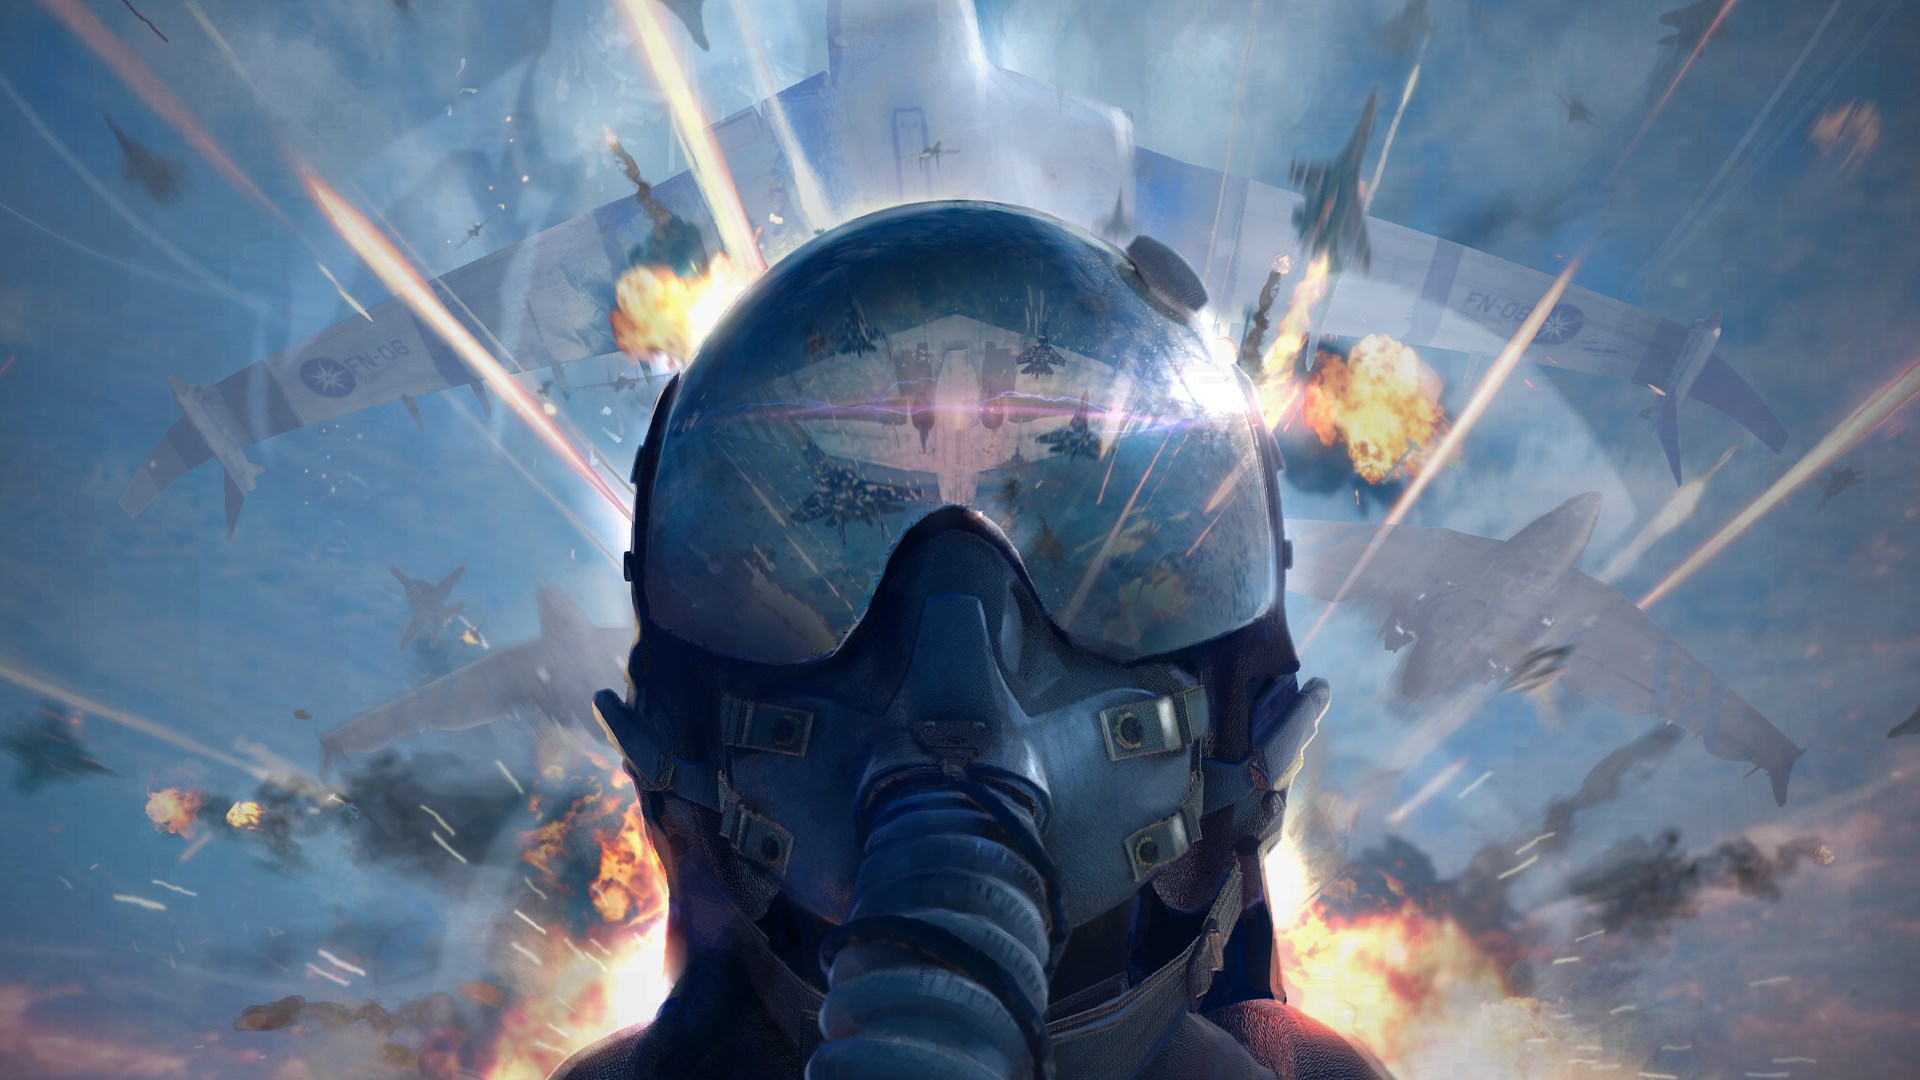 Ace Combat 7: requisitos de sistema para PC - Videogame Mais